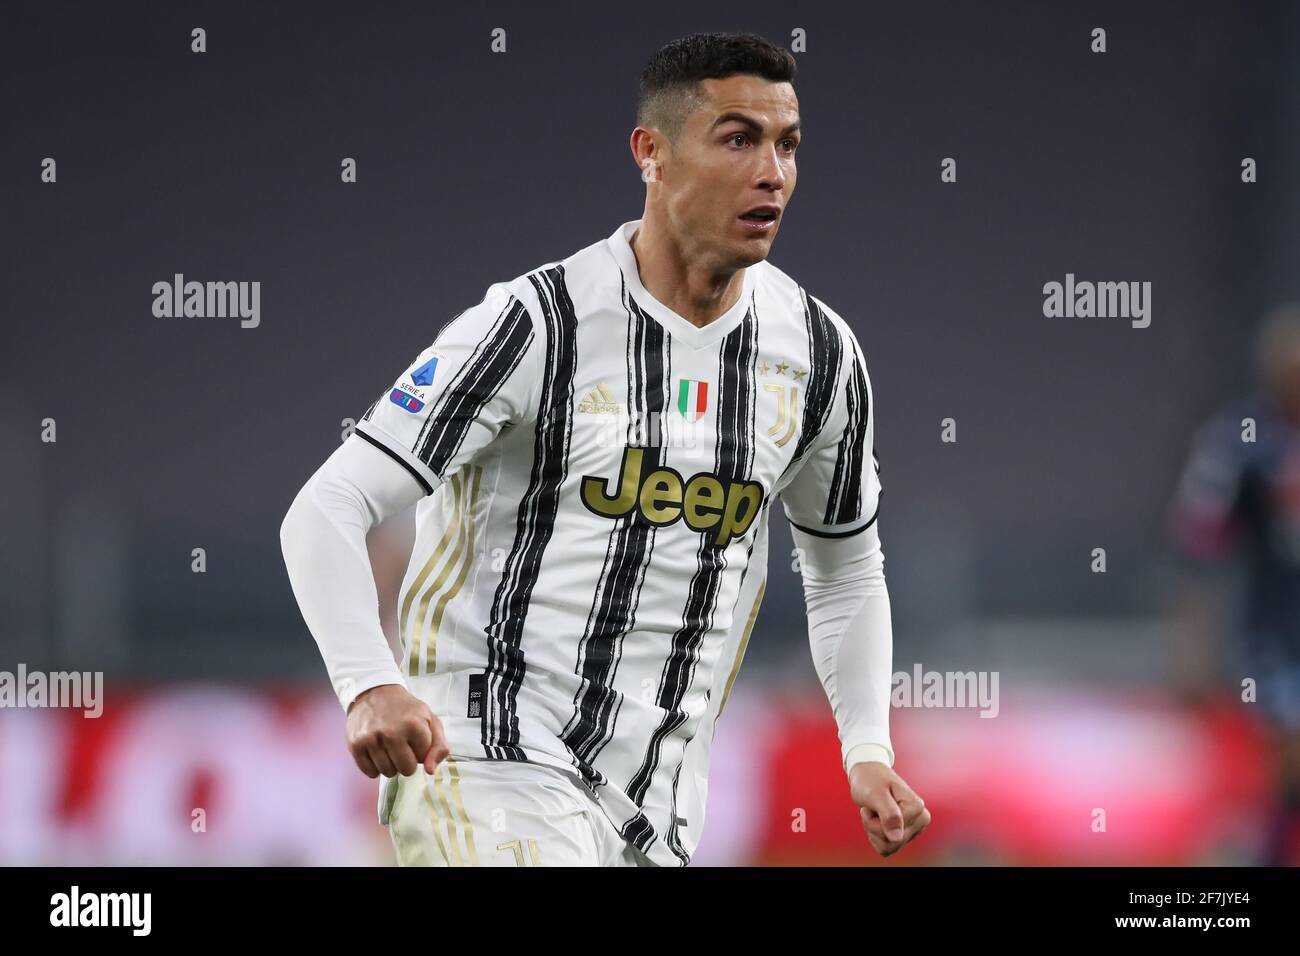 Turin, Italien, 7. April 2021.Cristiano Ronaldo von Juventus während des Serie-A-Spiels im Allianz-Stadion, Turin. Bildnachweis sollte lauten: Jonathan Moscrop / Sportimage Kredit: Sportimage/Alamy Live News Stockfoto